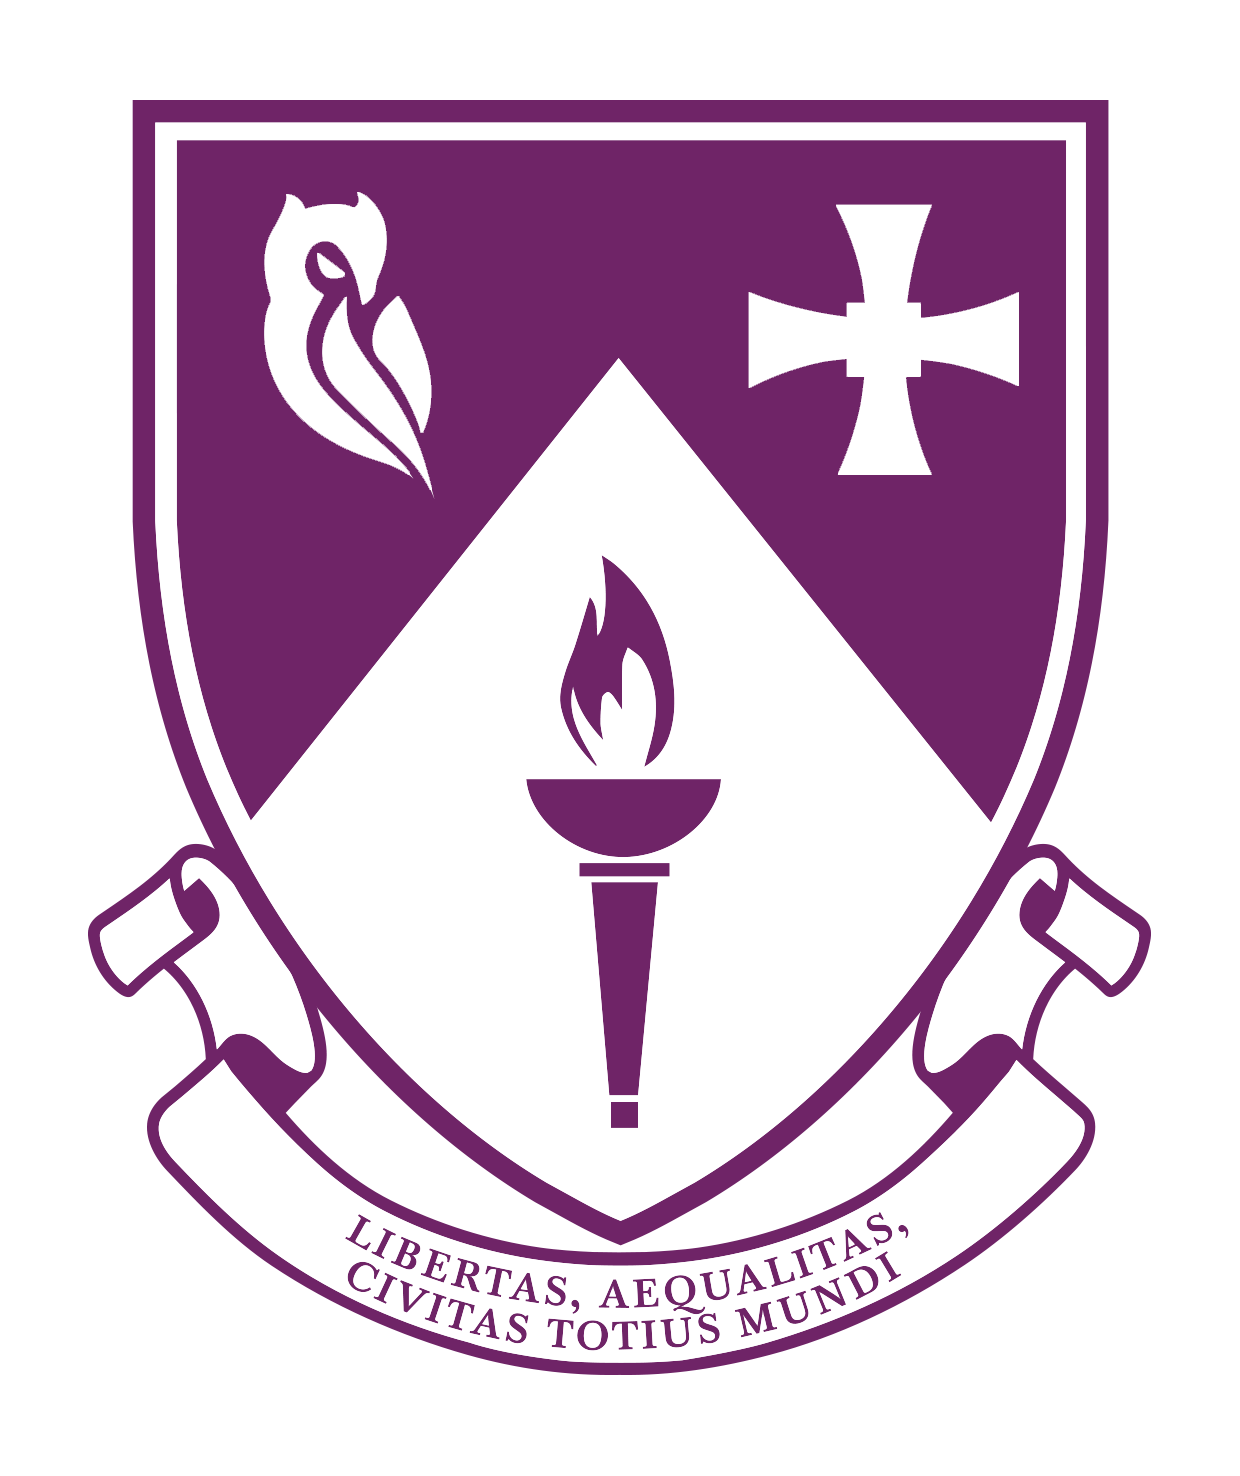 South College Crest purple with motto Libertas, Aequalitas, Civitas Totius mundi